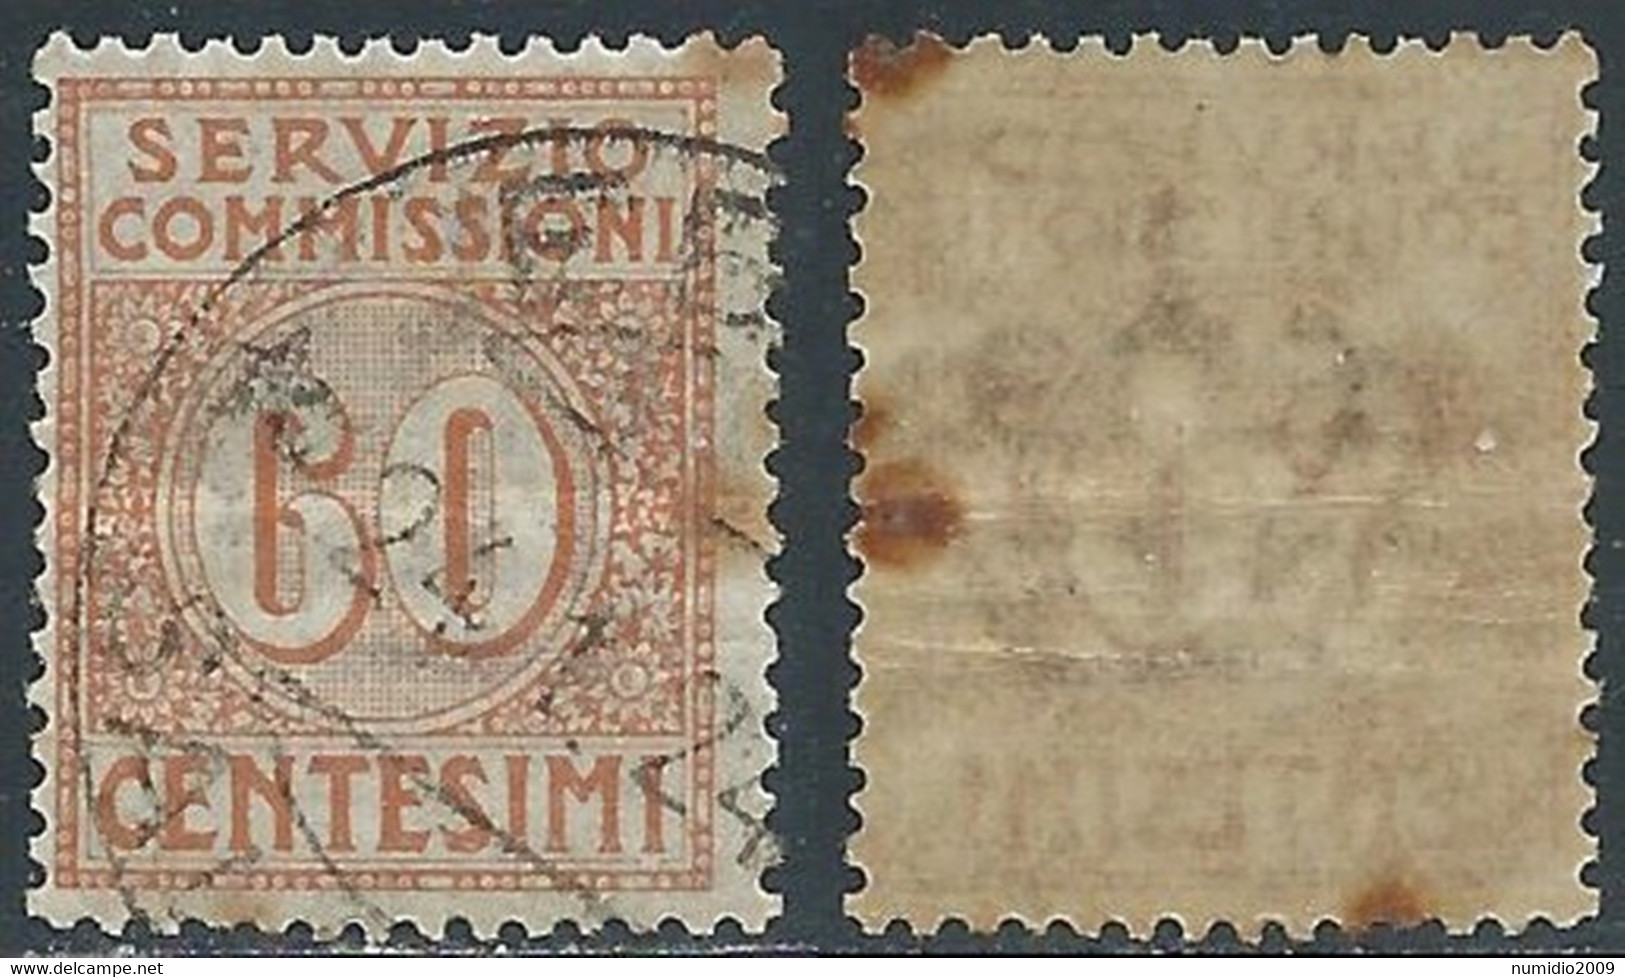 1913 REGNO SERVIZIO COMMISSIONI USATO 60 CENT - RE28-3 - Vaglia Postale